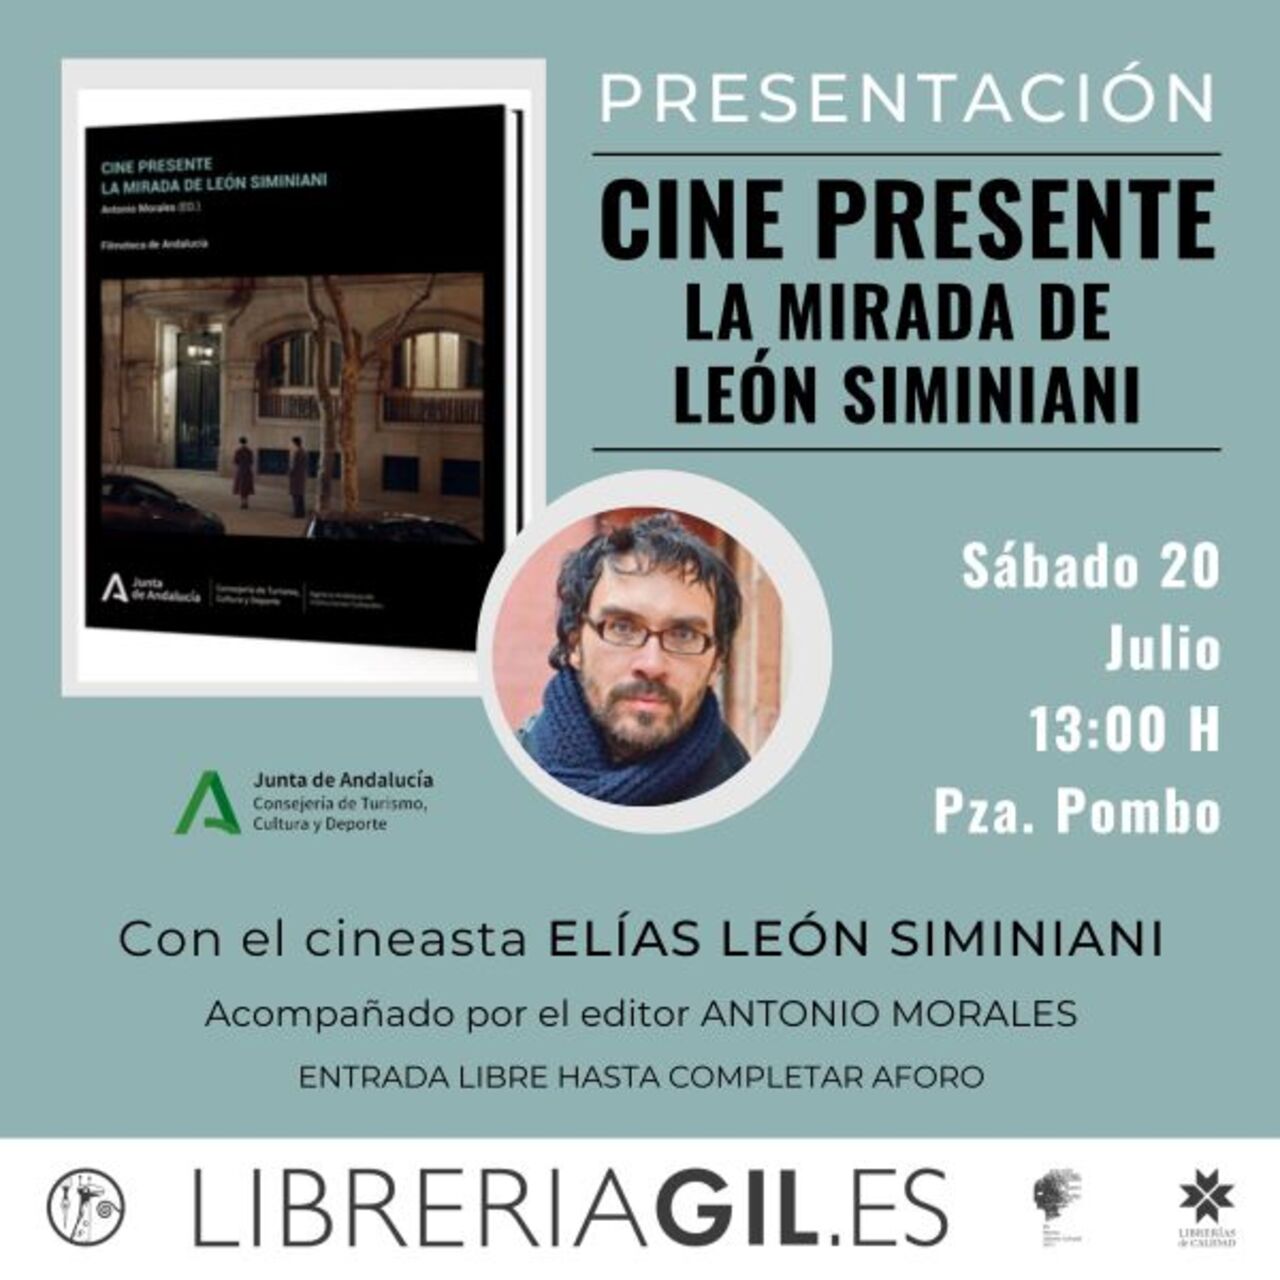 Presentación de "Cine presente", con el cineasta Elías León Siminiani